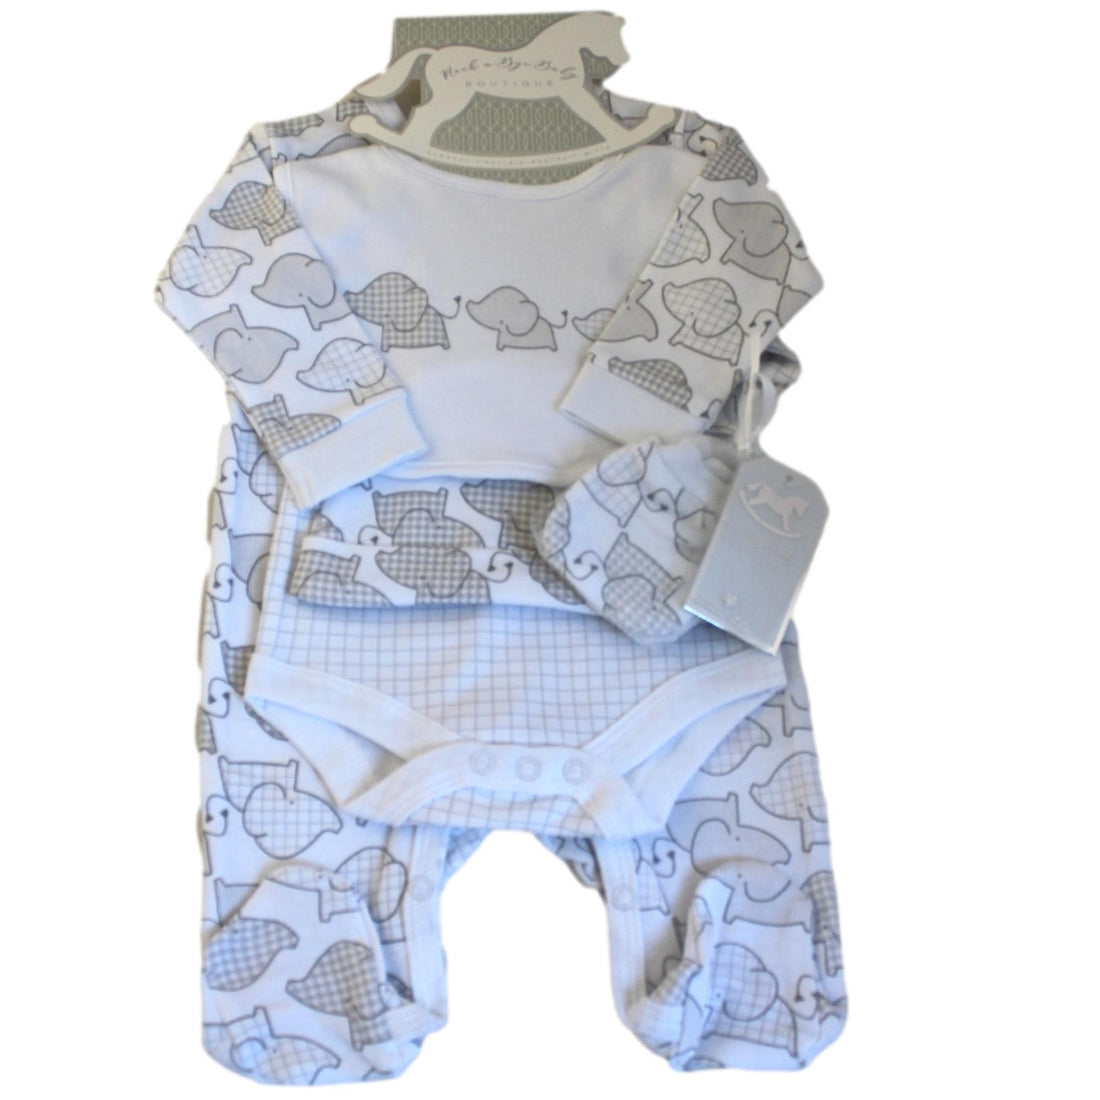 Unisex Elephant Themed Baby Clothes Set